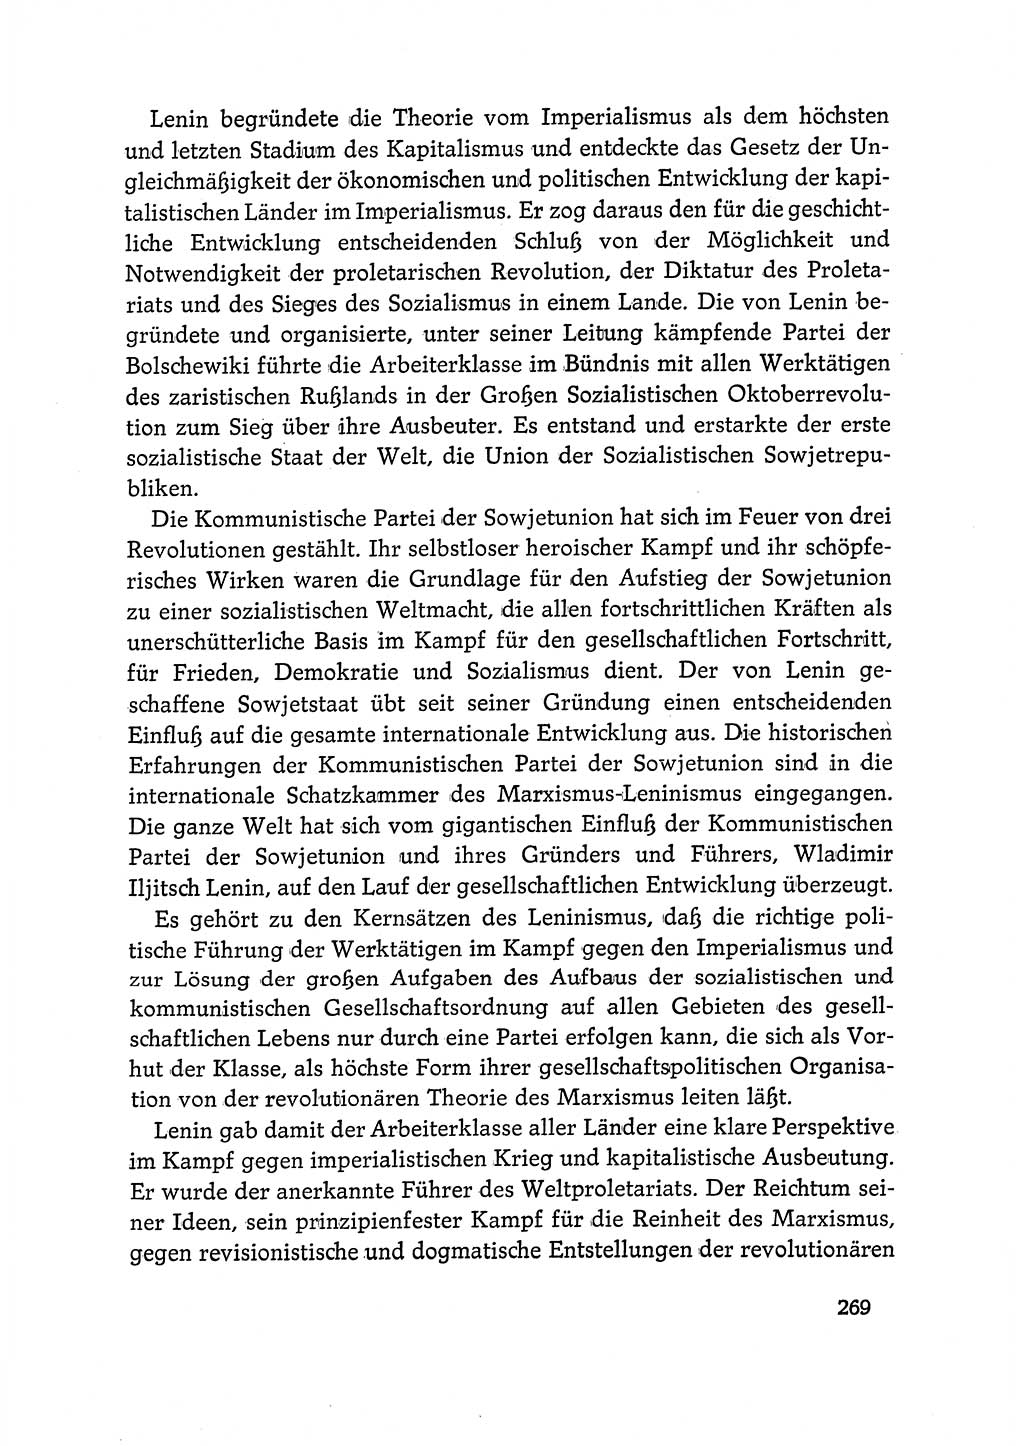 Dokumente der Sozialistischen Einheitspartei Deutschlands (SED) [Deutsche Demokratische Republik (DDR)] 1968-1969, Seite 269 (Dok. SED DDR 1968-1969, S. 269)